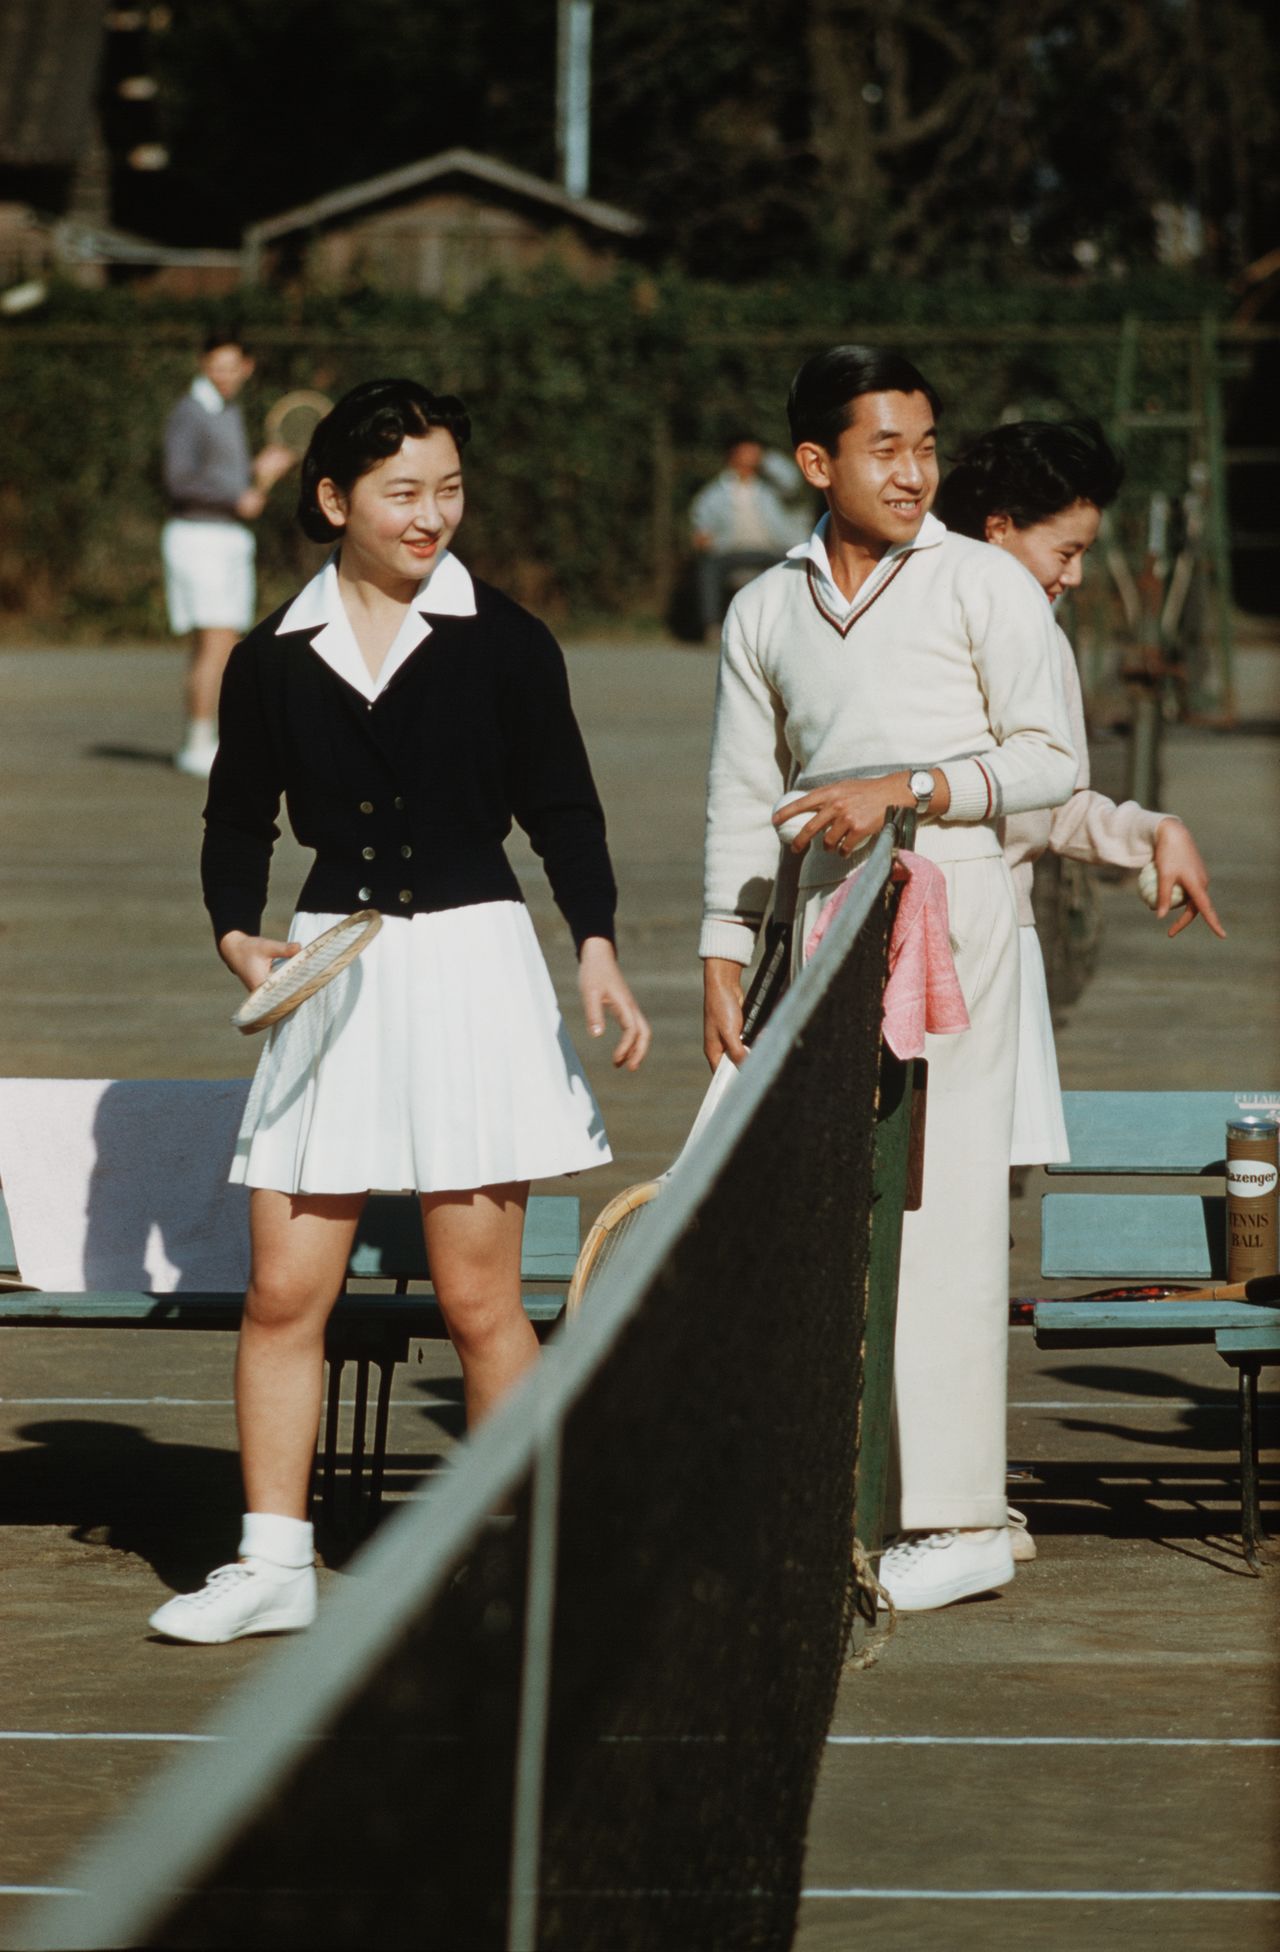 ولي العهد والسيدة شودا ميتشيكو وهما يستمتعان بلعب التنس في نادي طوكيو لون للتنس في حي أزابو في مدينة طوكيو=6/12/1958 (جيجي برس).